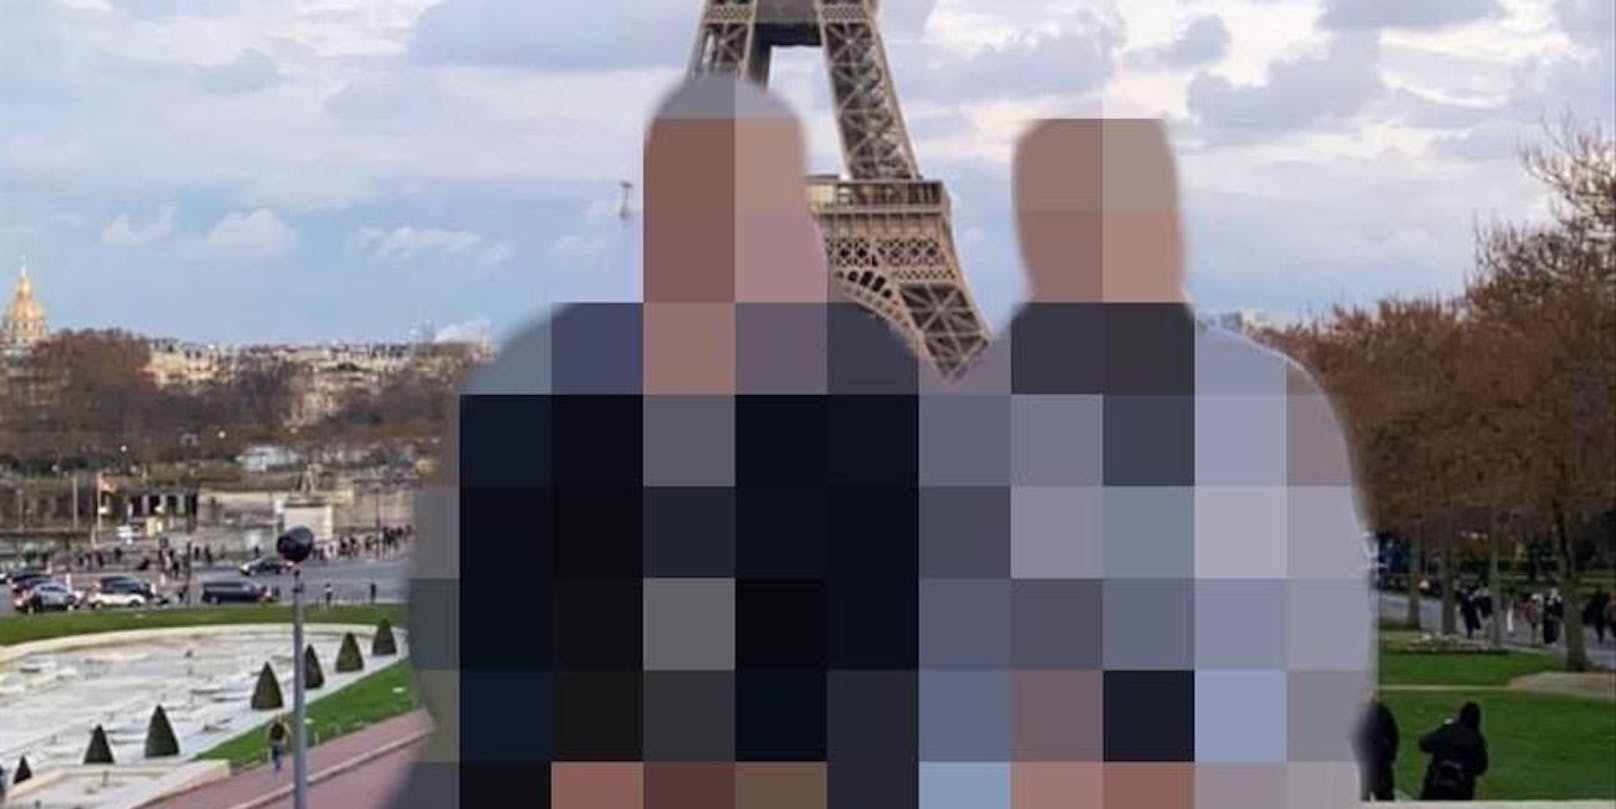 Dieses Urlaubsfoto des Paares aus Paris reichte dem Zollbeamten nicht als Beweis für die Beziehung der beiden Männer.